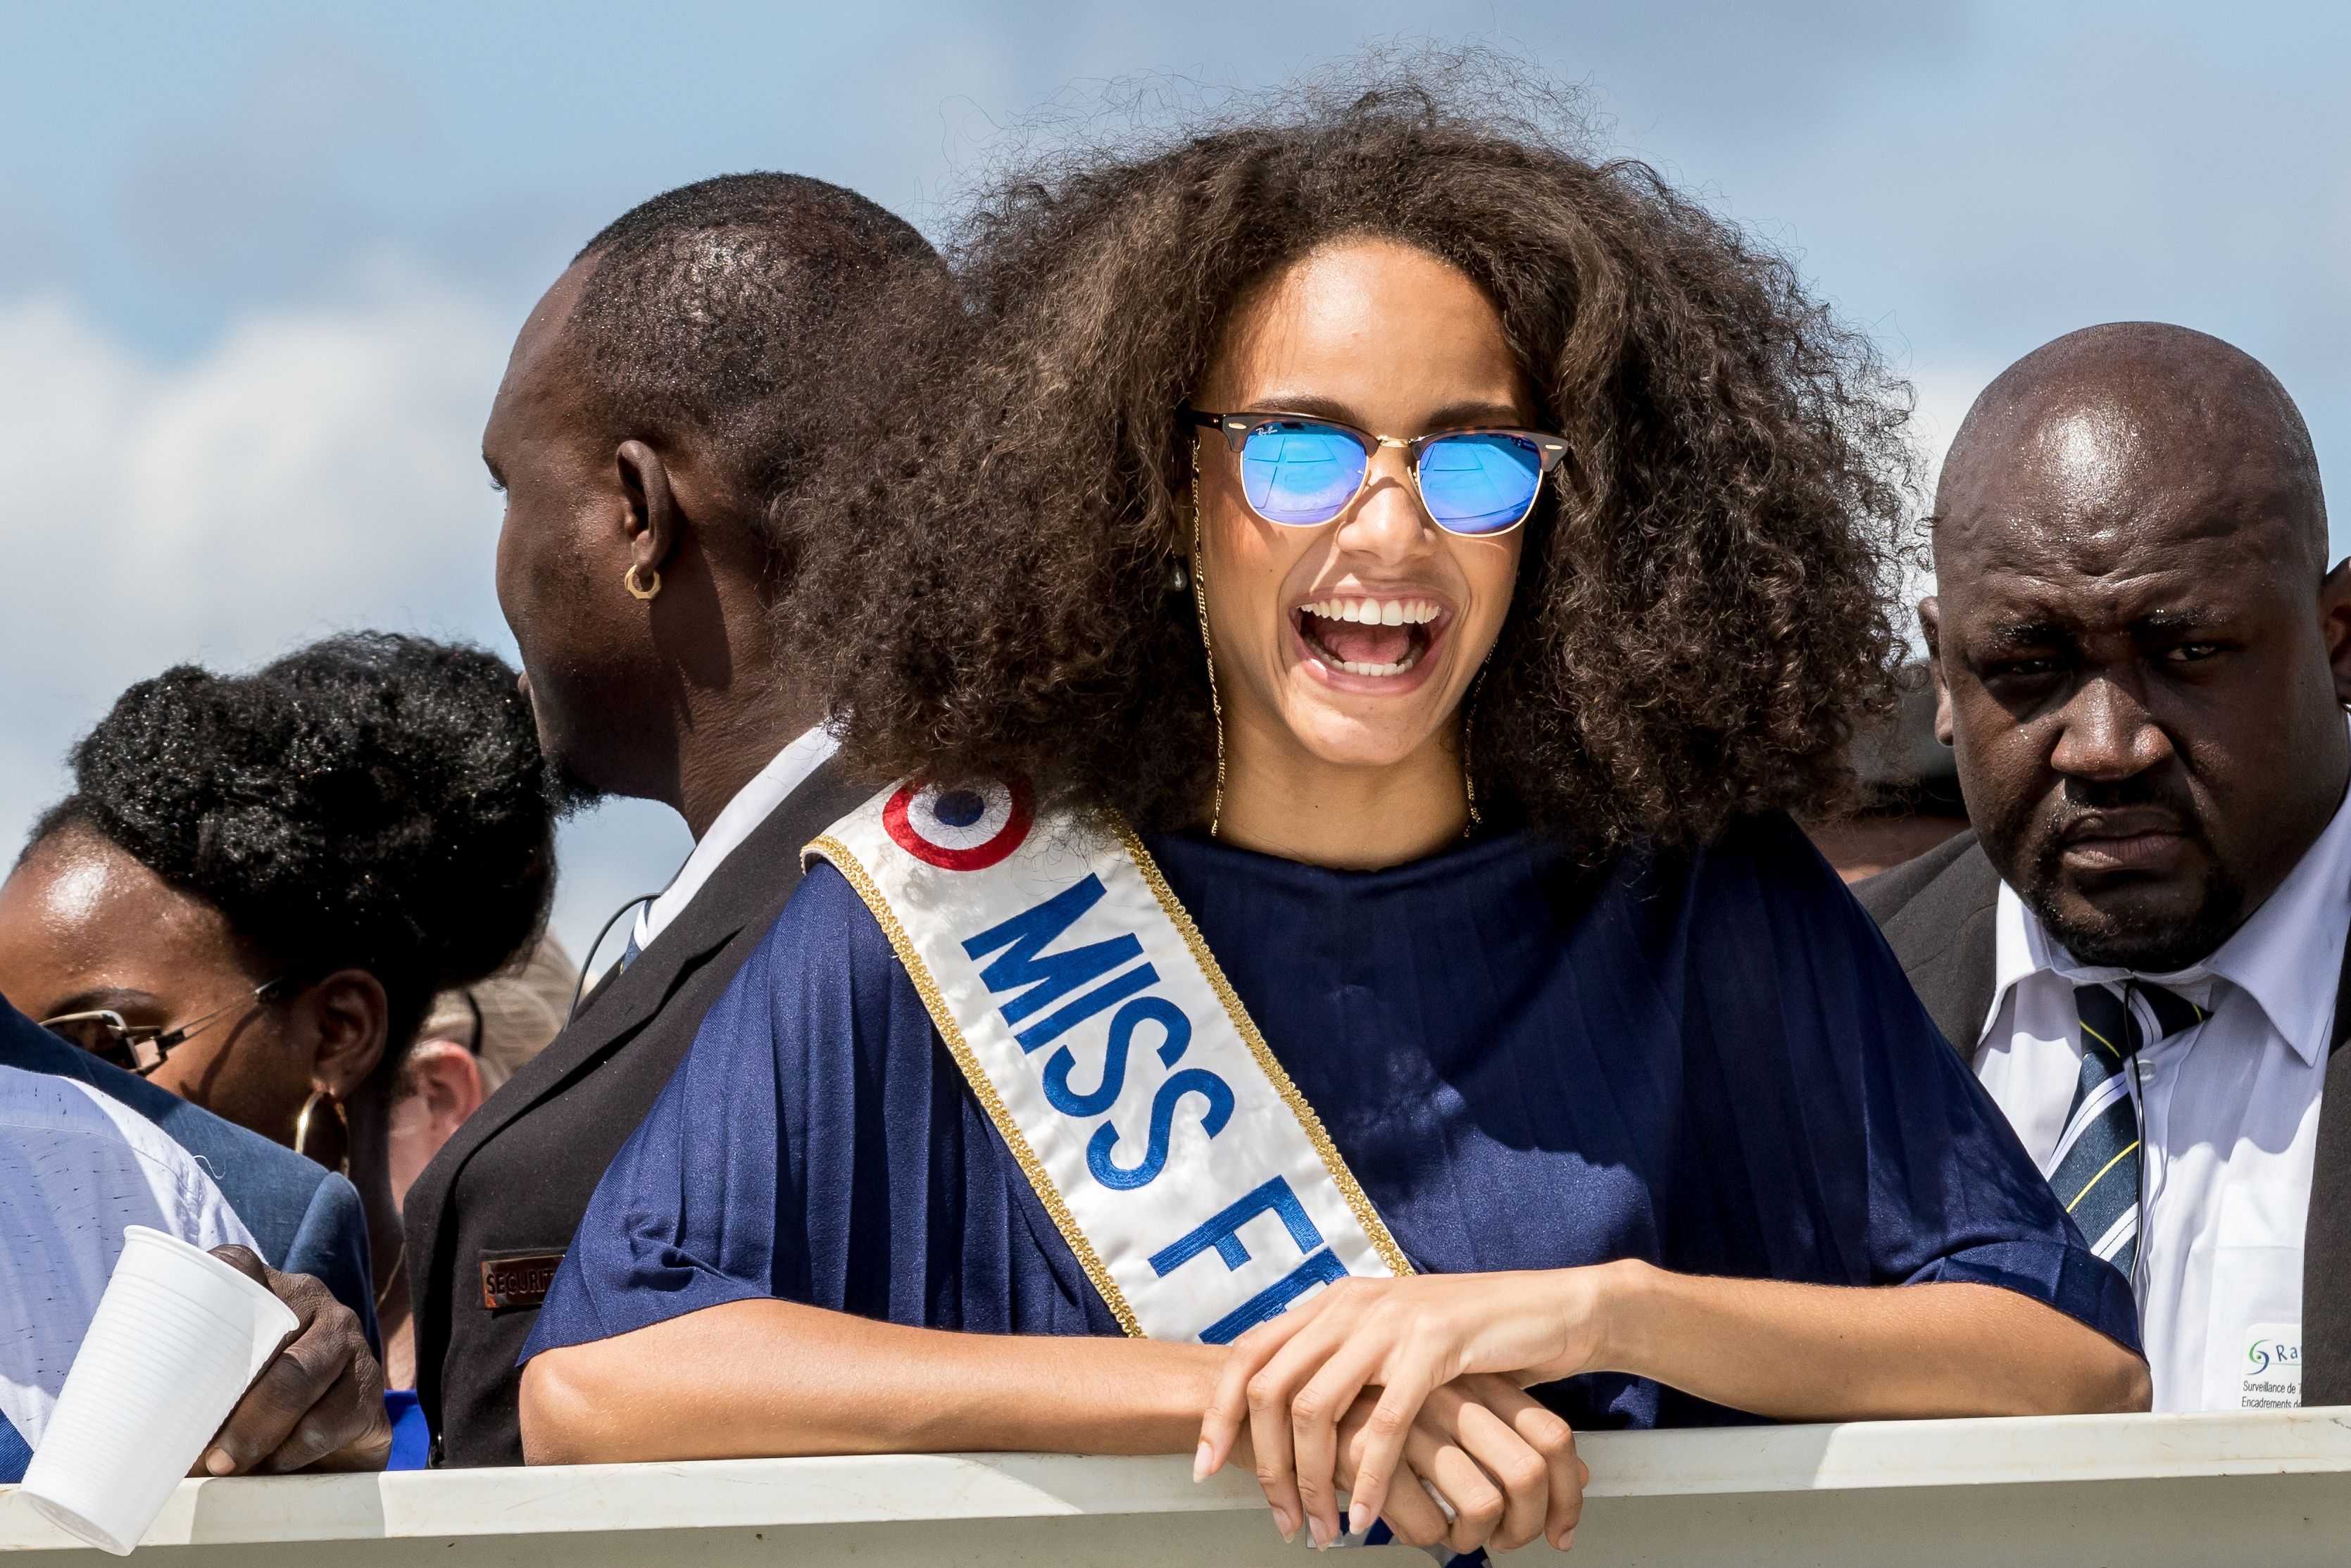 ملكة جمال فرنسا تبادل المواطنين فى مدينة ماريباسولا الابتسامة